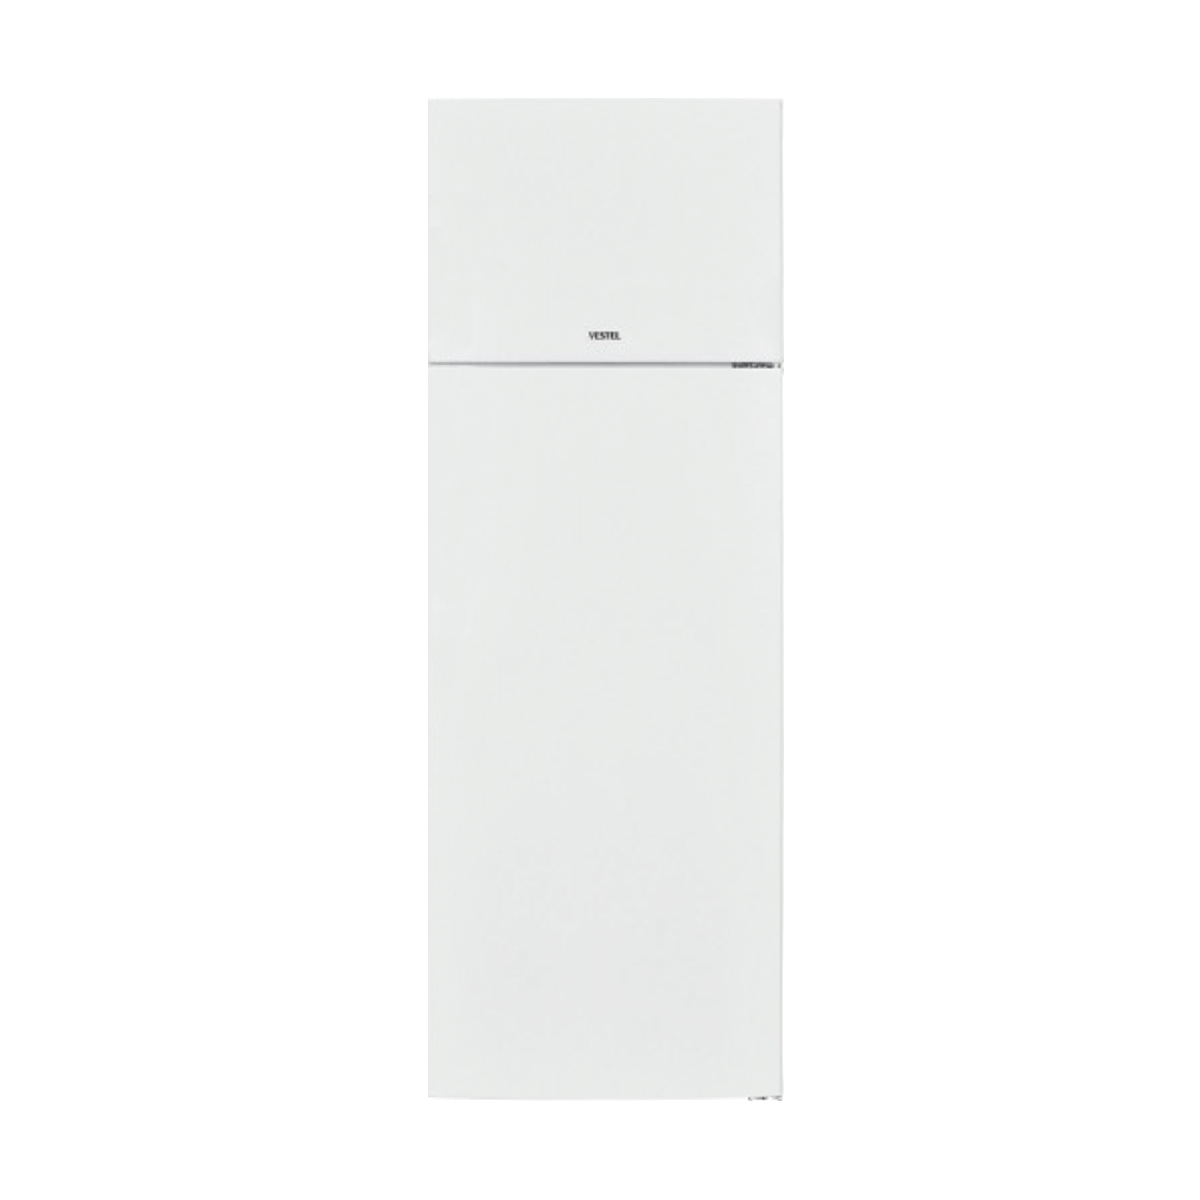 Refrigerator SD 310 A+